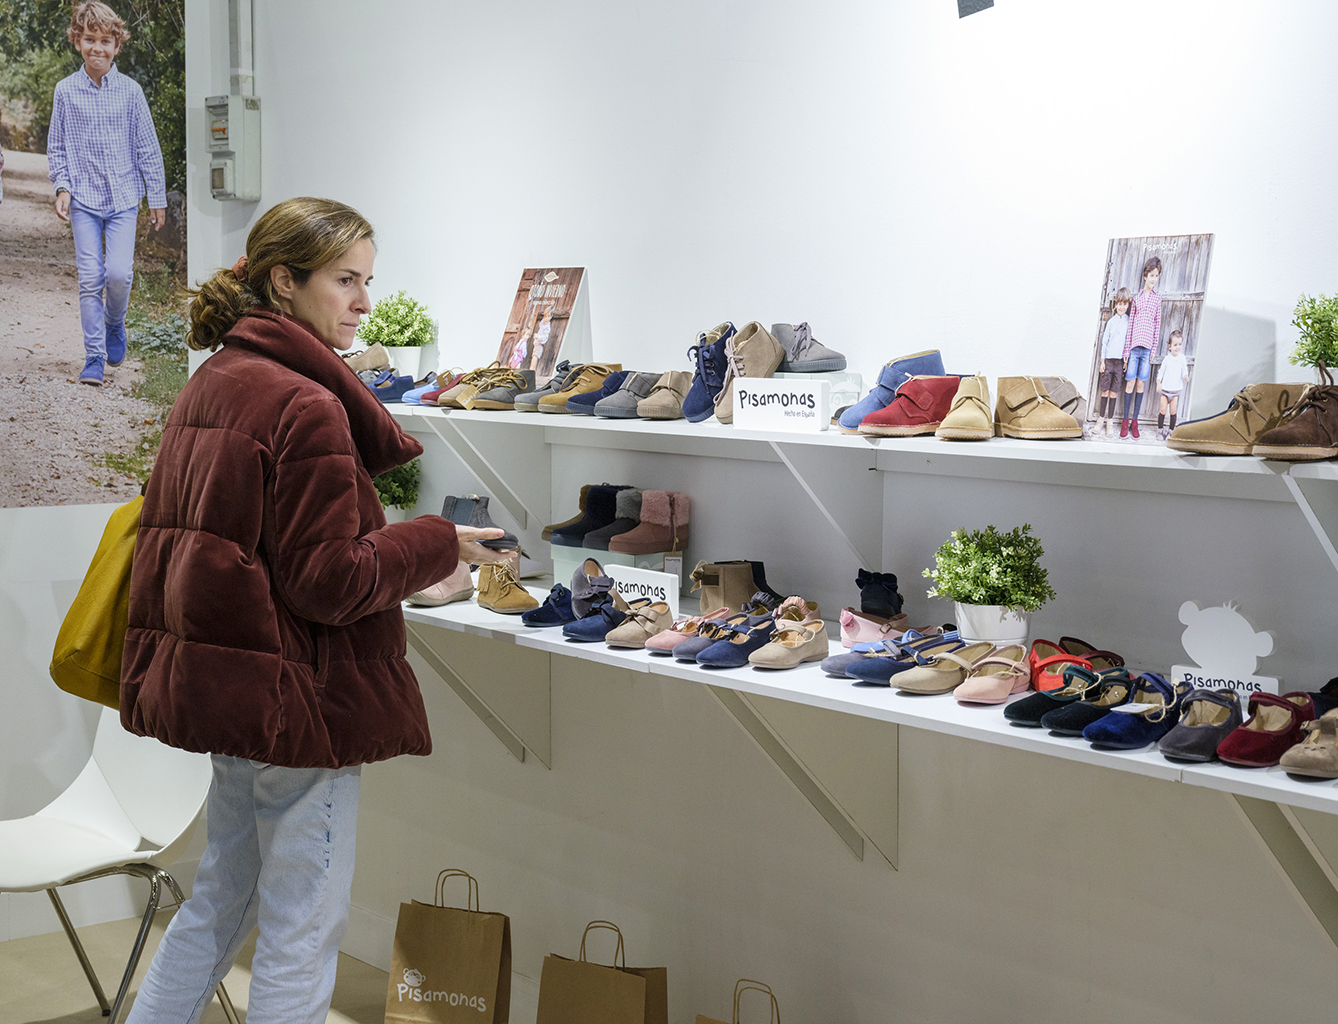 El Ganso sigue creciendo en Francia y abre su primera tienda en Lille